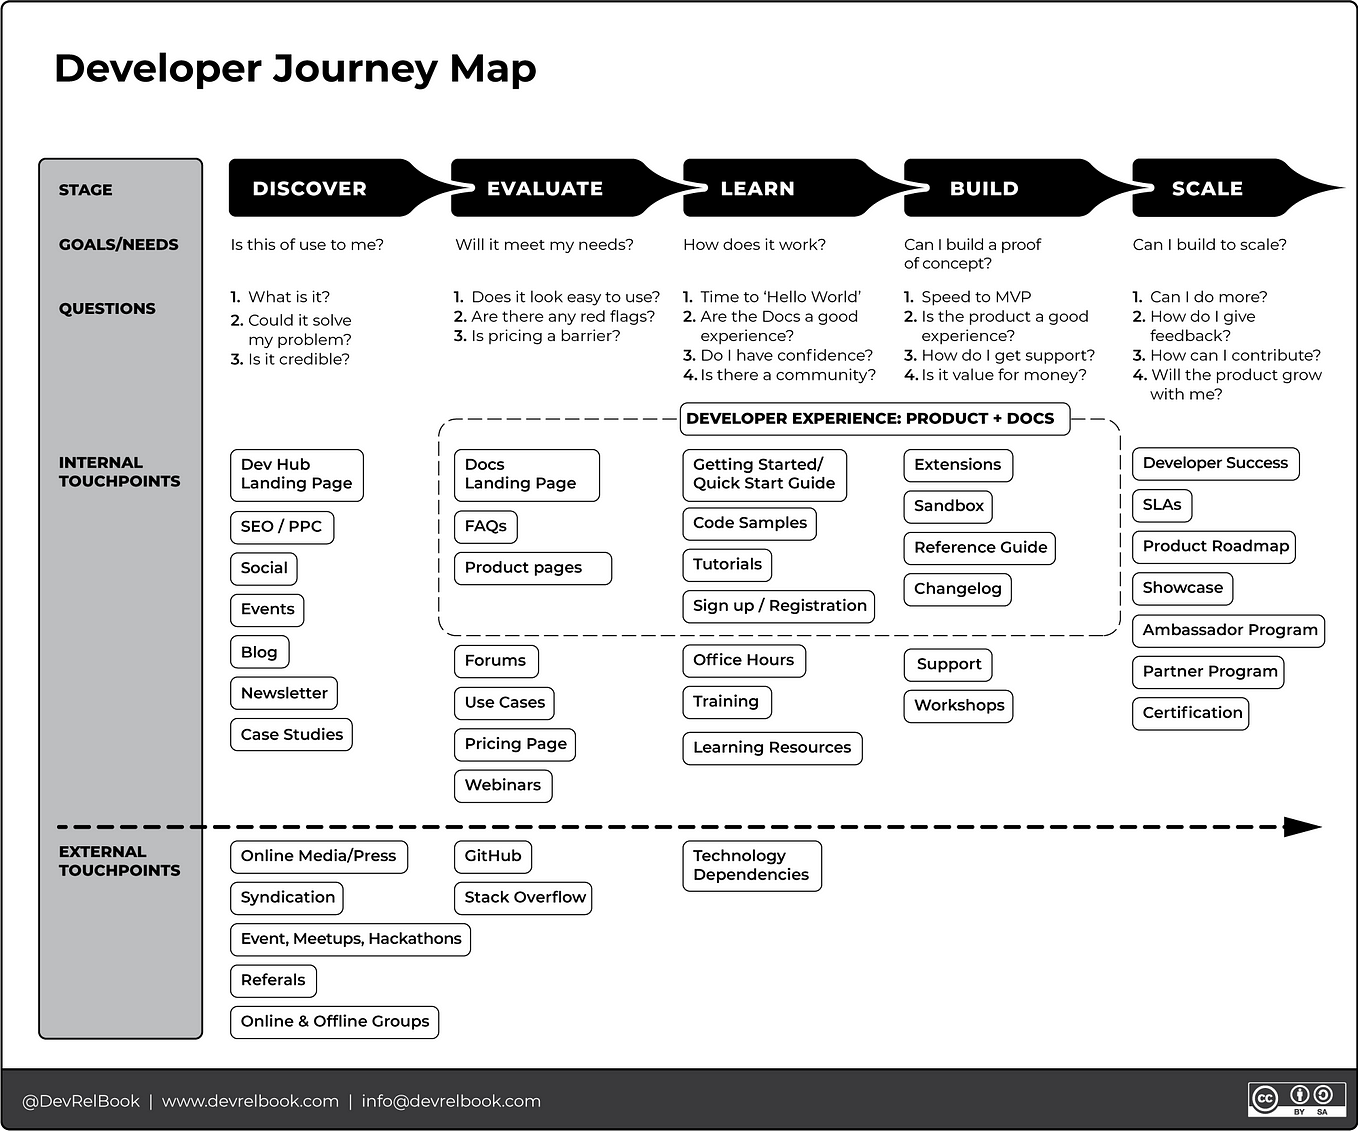 Developer Relations: The Developer Journey Map